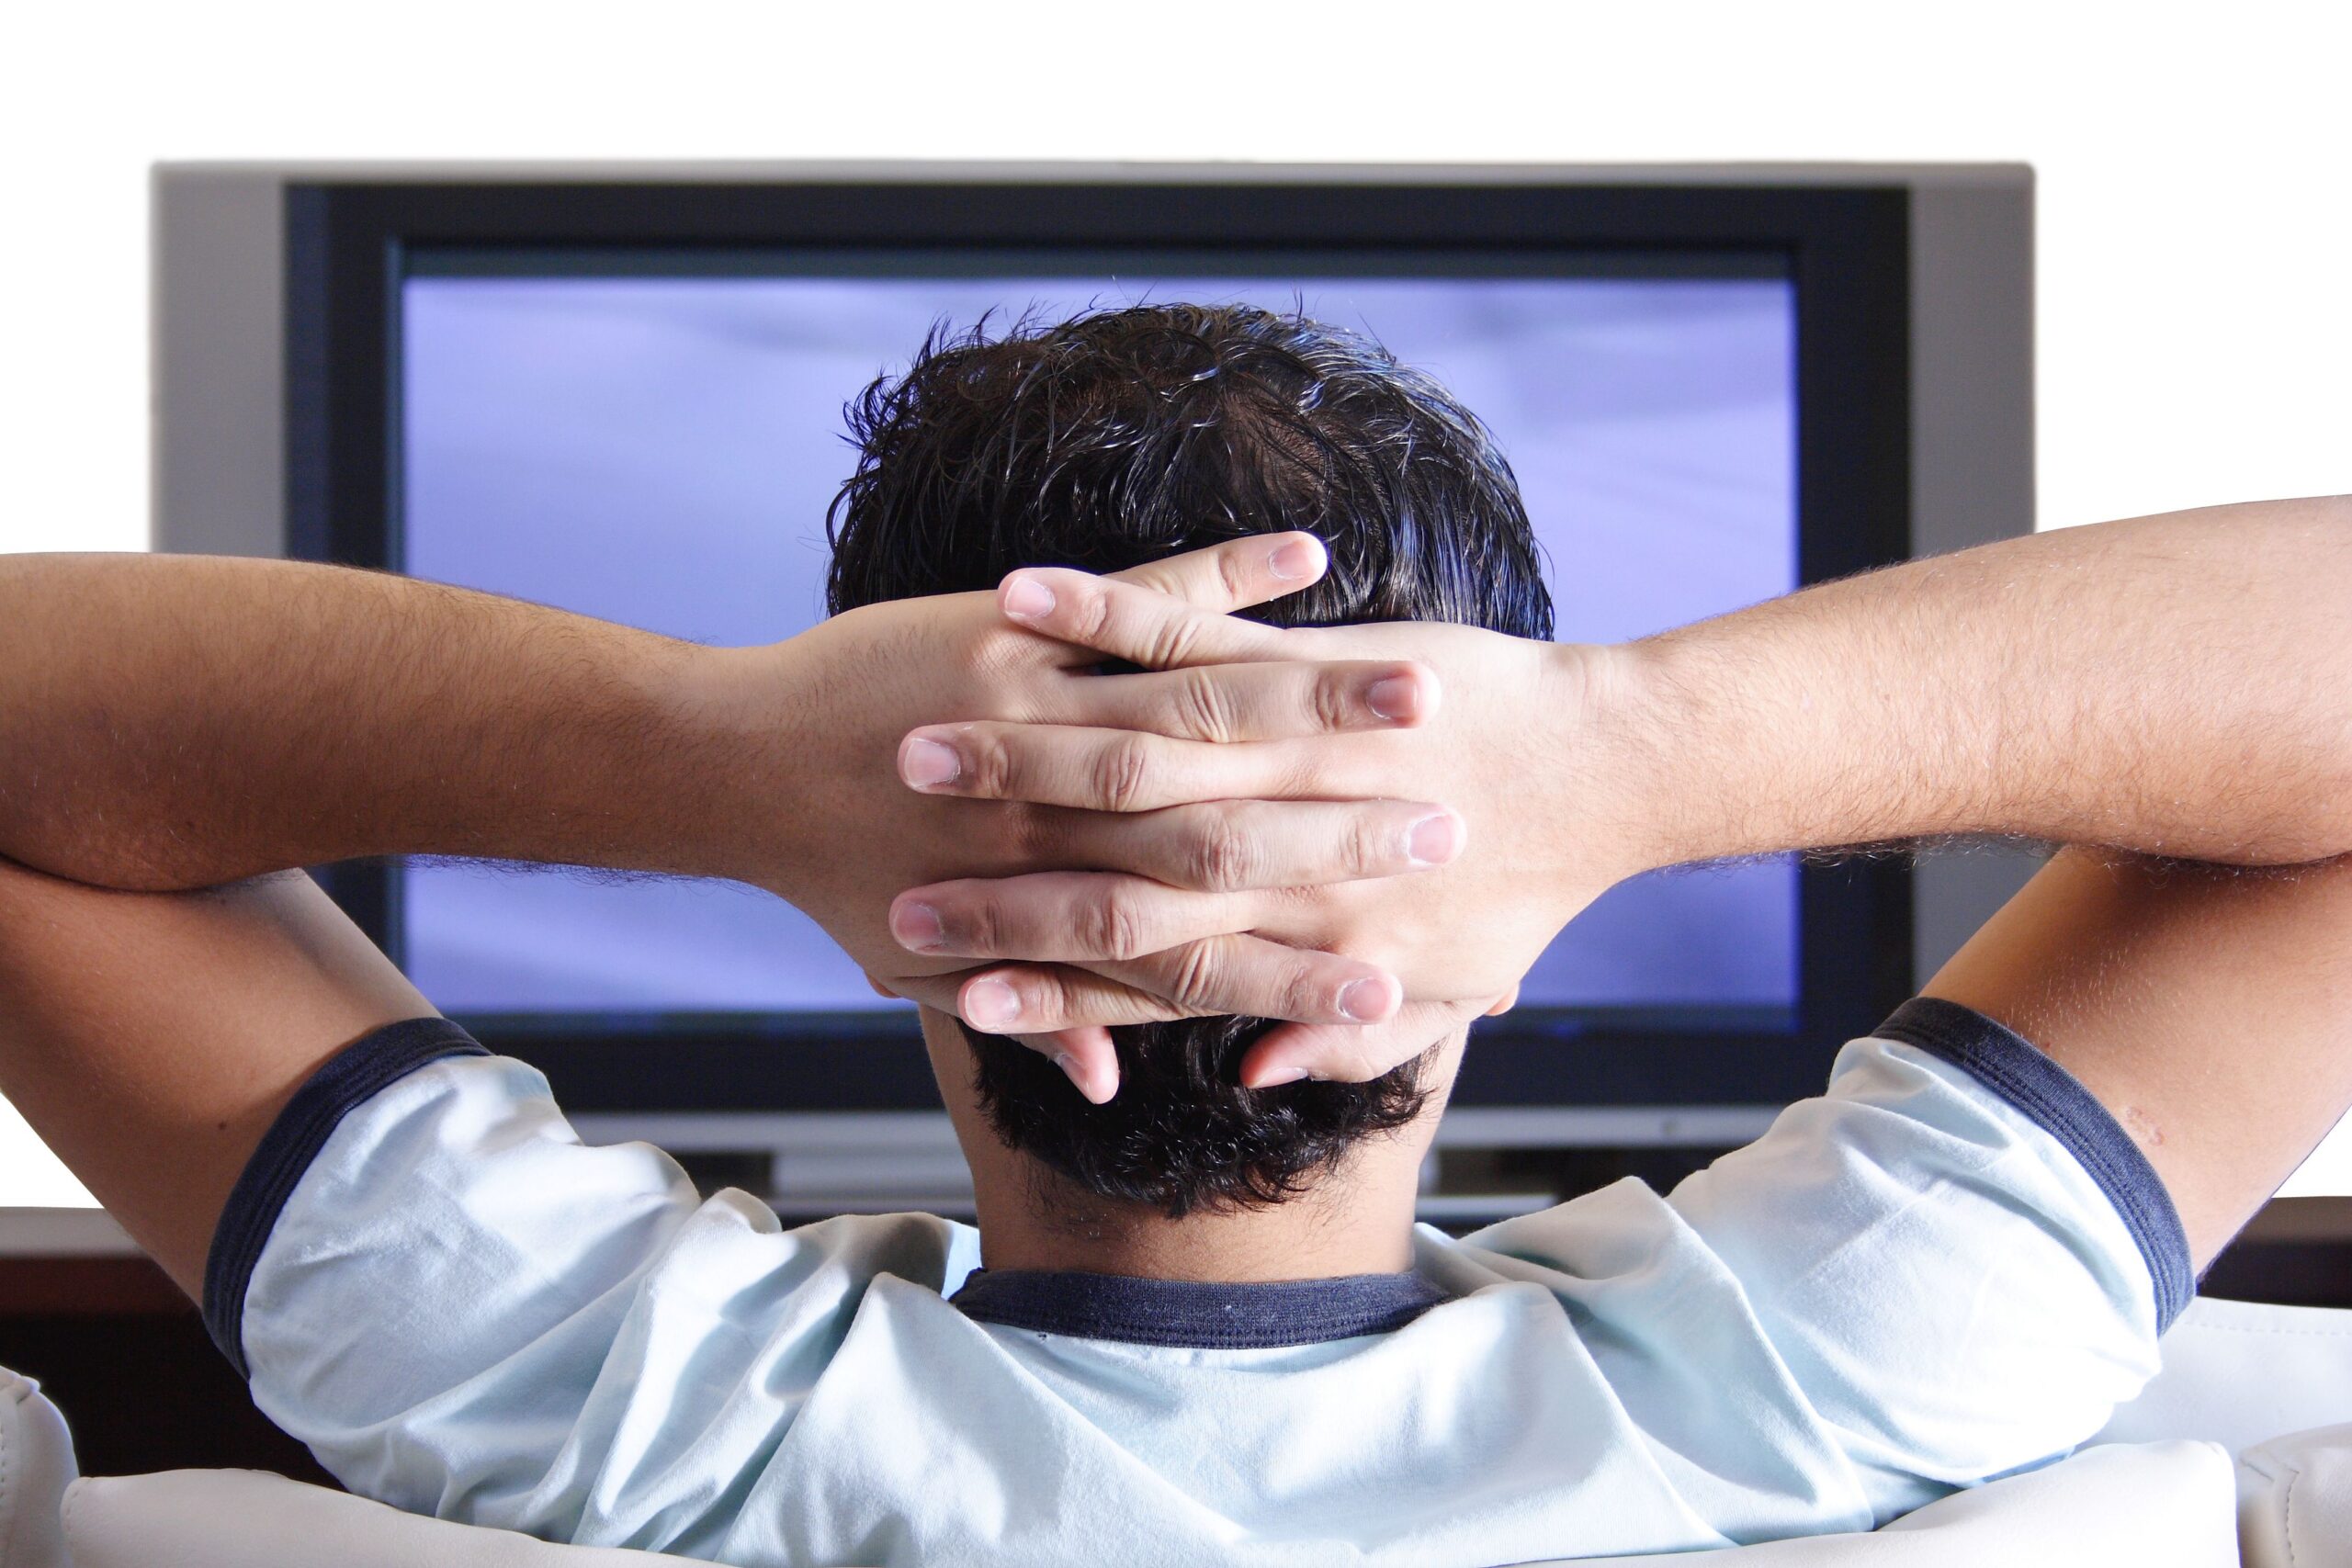 Guardare troppa tv da giovani danneggia le facoltà cognitive